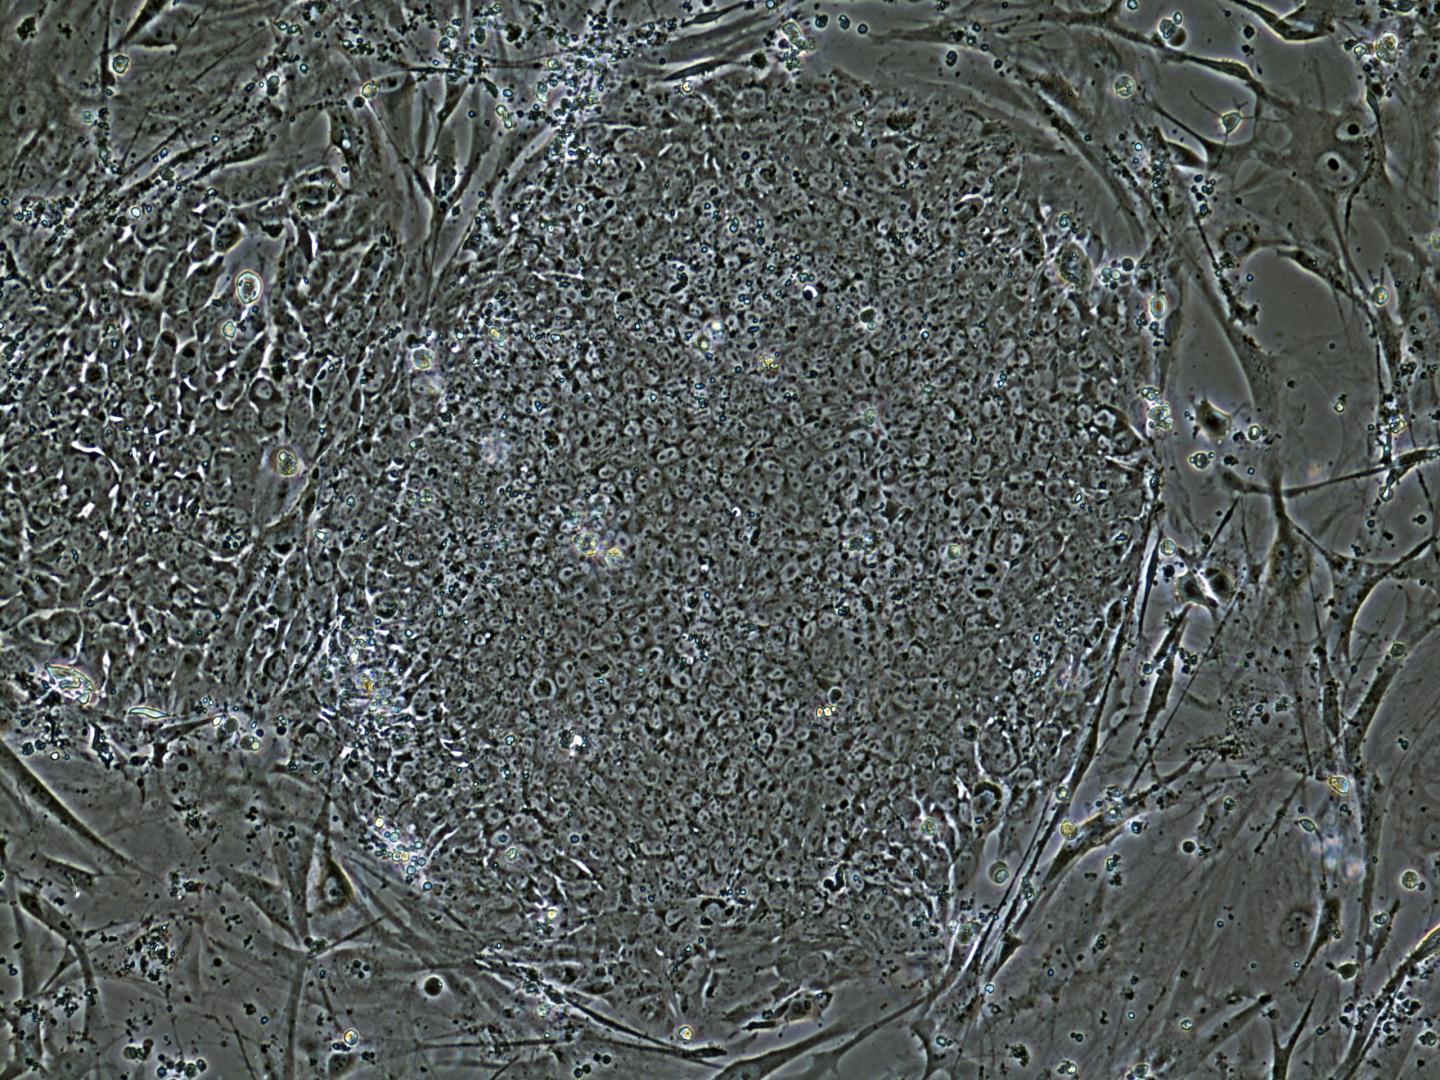 Stem Cell Colony